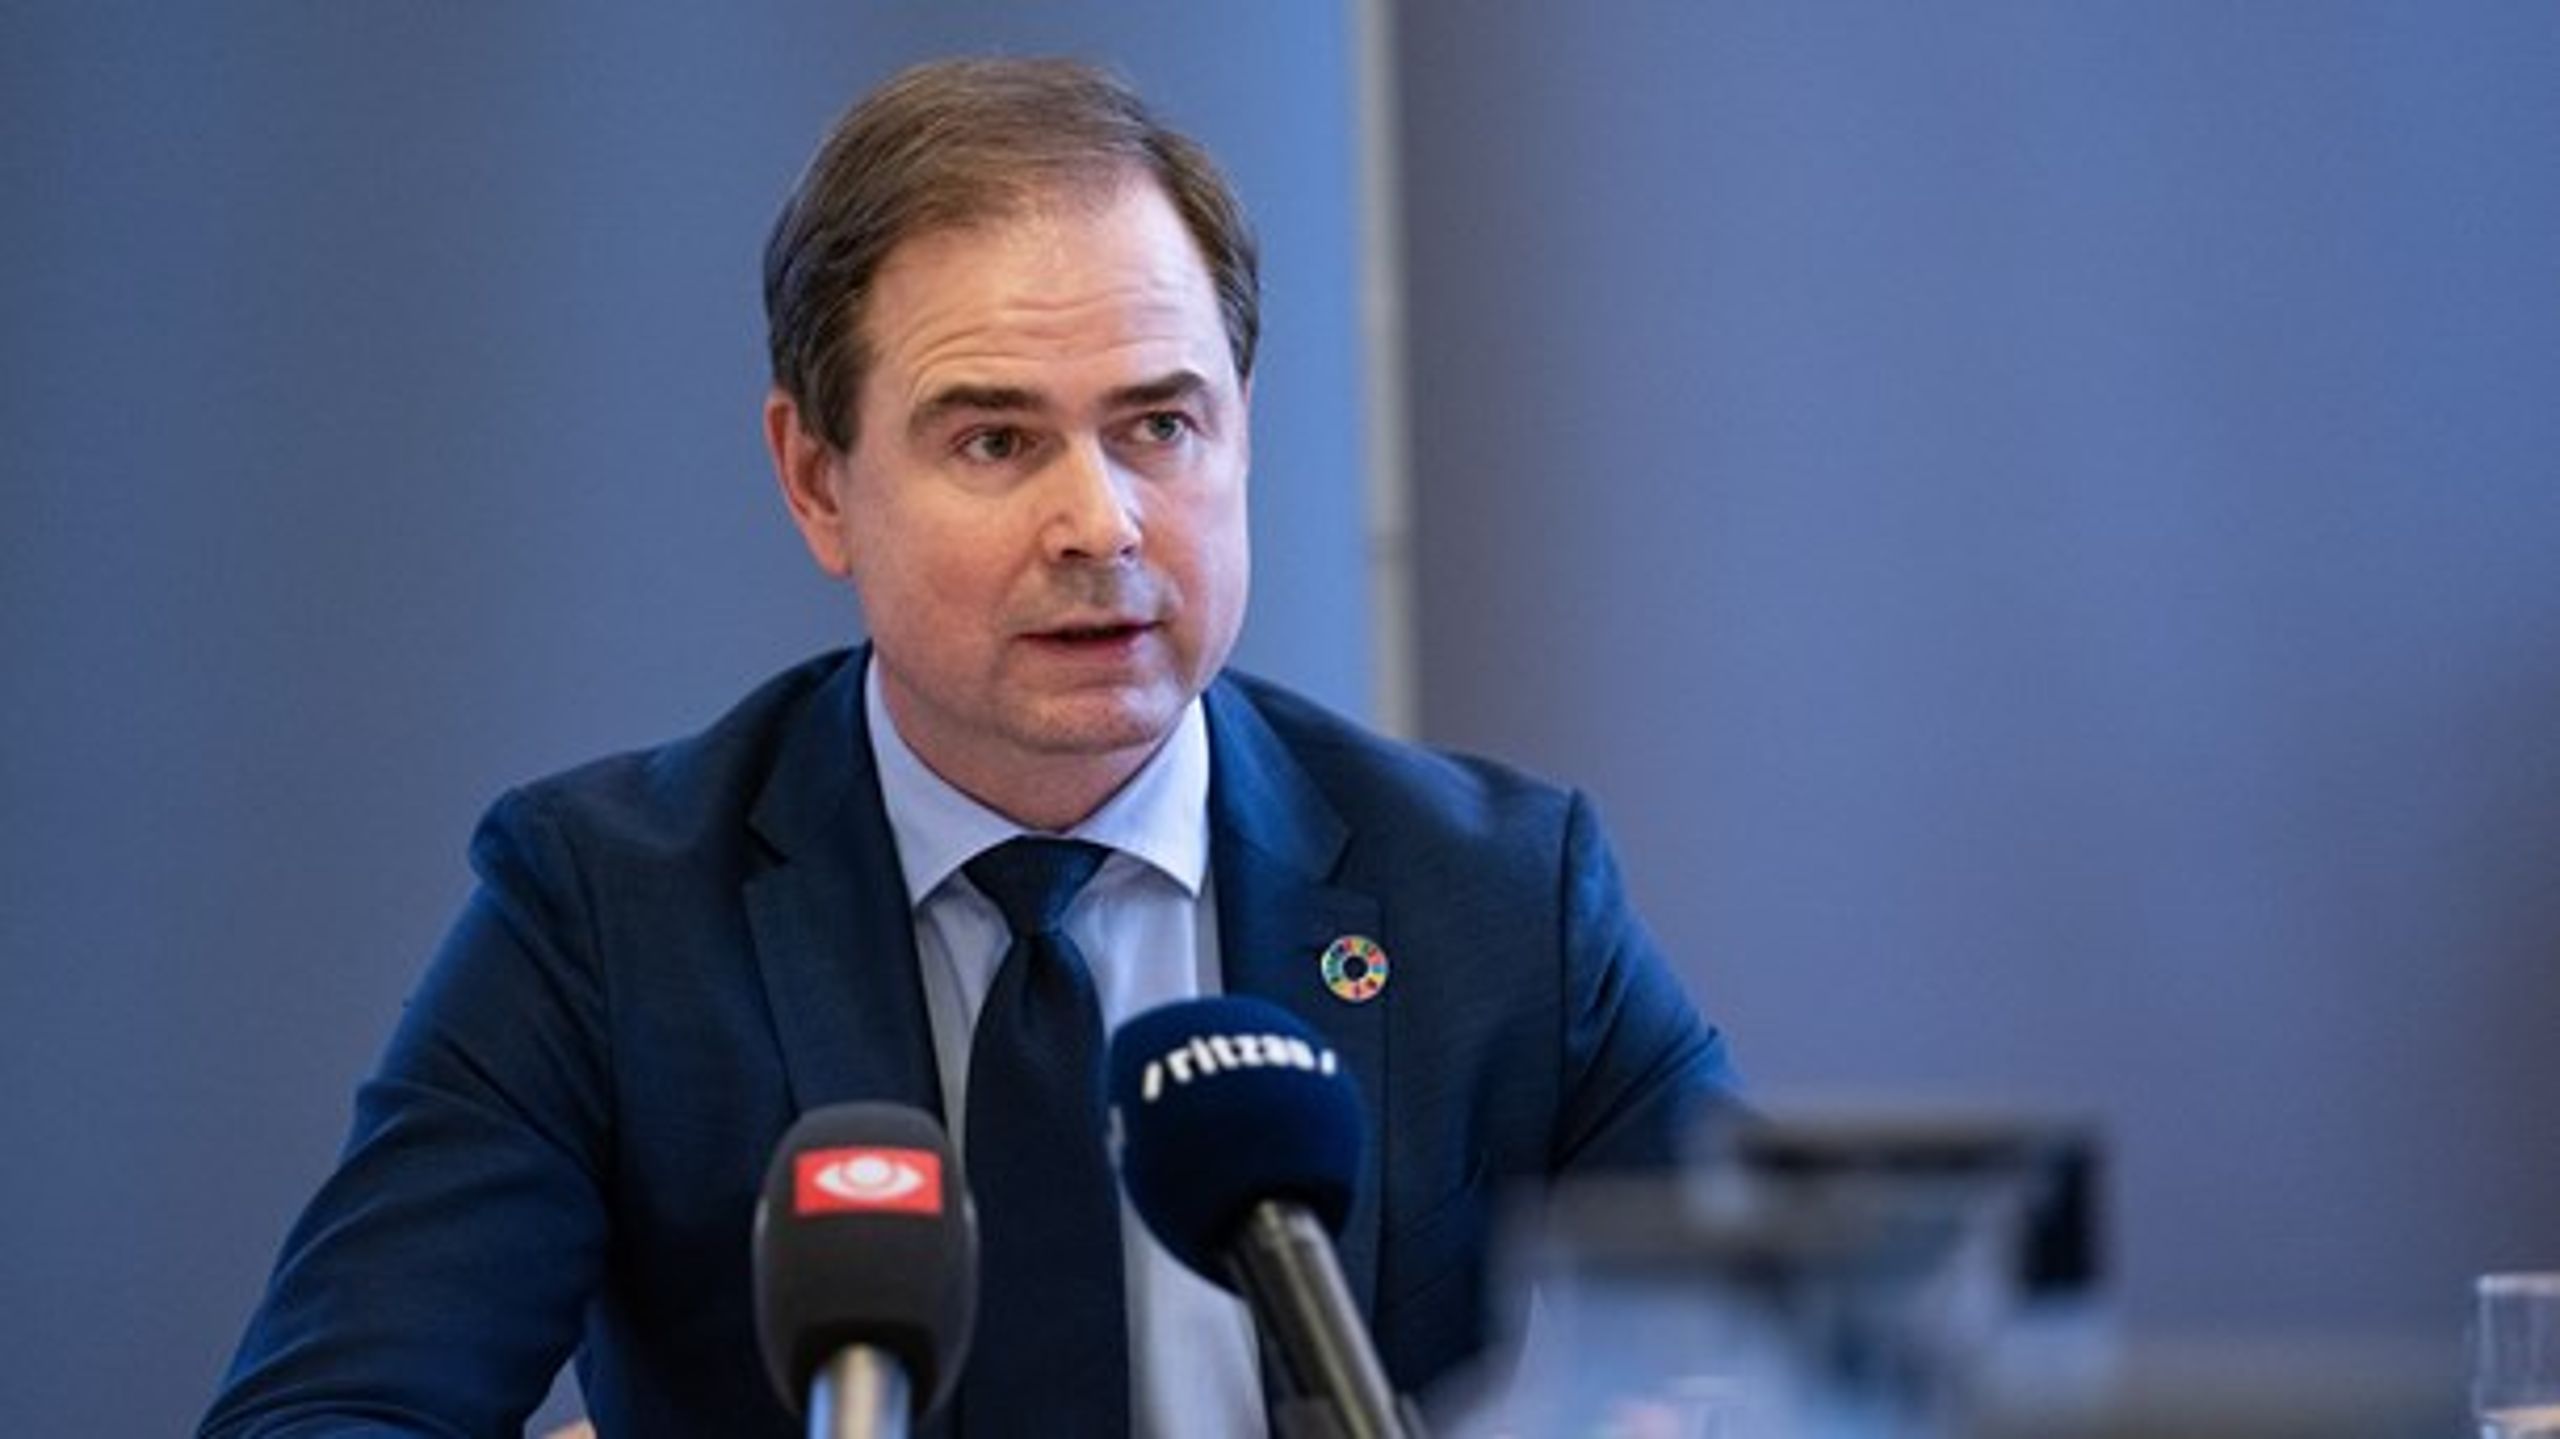 Finansminister Nicolai Wammen (S) foreslog i februar at spare på de EU-fondsmidler, der blandt andet går til danske virksomheder. Det møder nu kritik fra både kommuner og regioner.